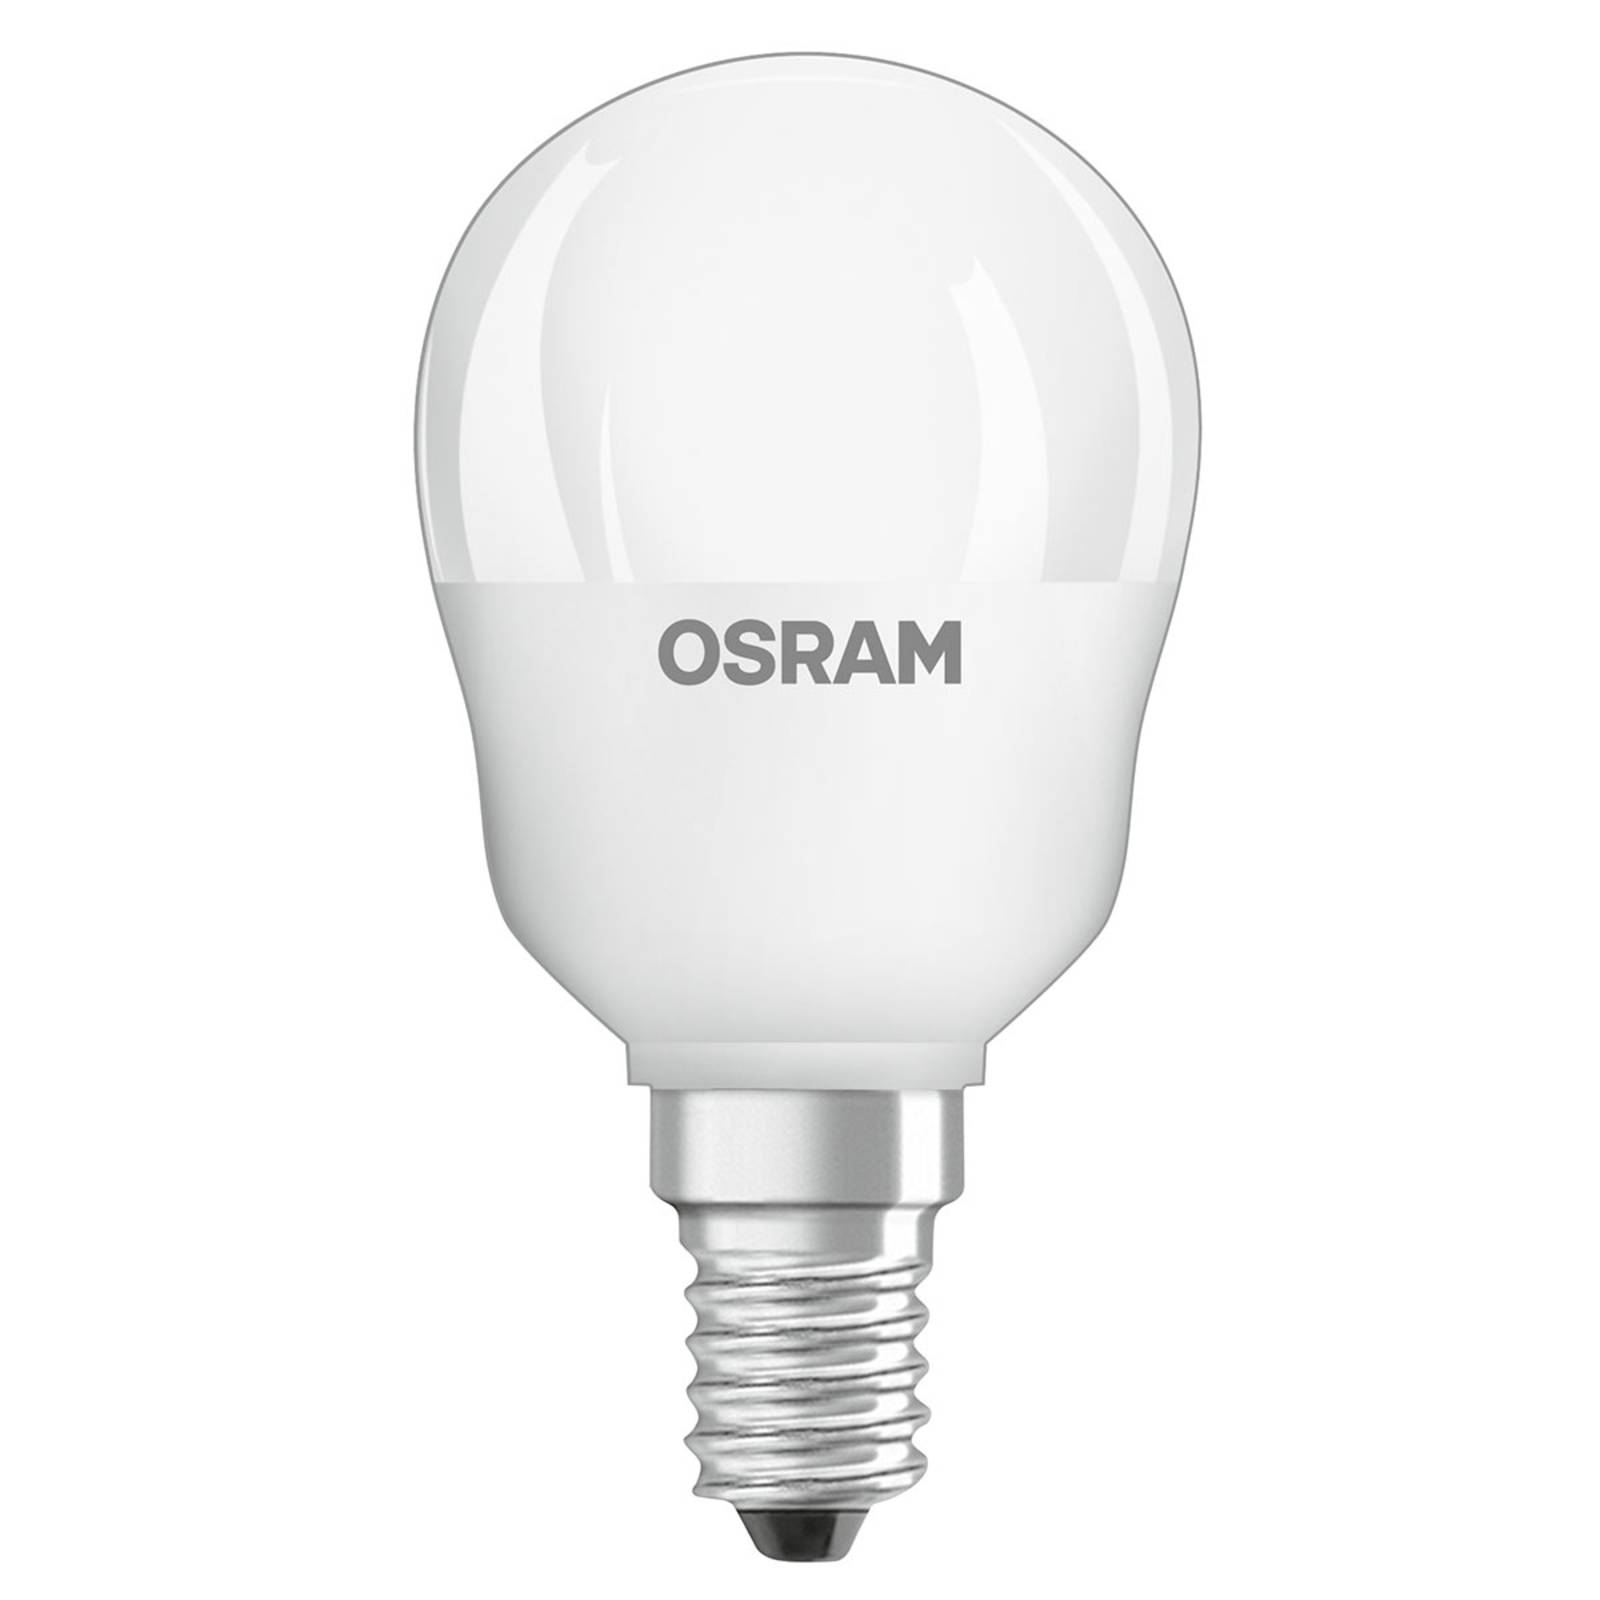 OSRAM OSRAM LED žárovka E14 4,2W Star+kapka remote matná